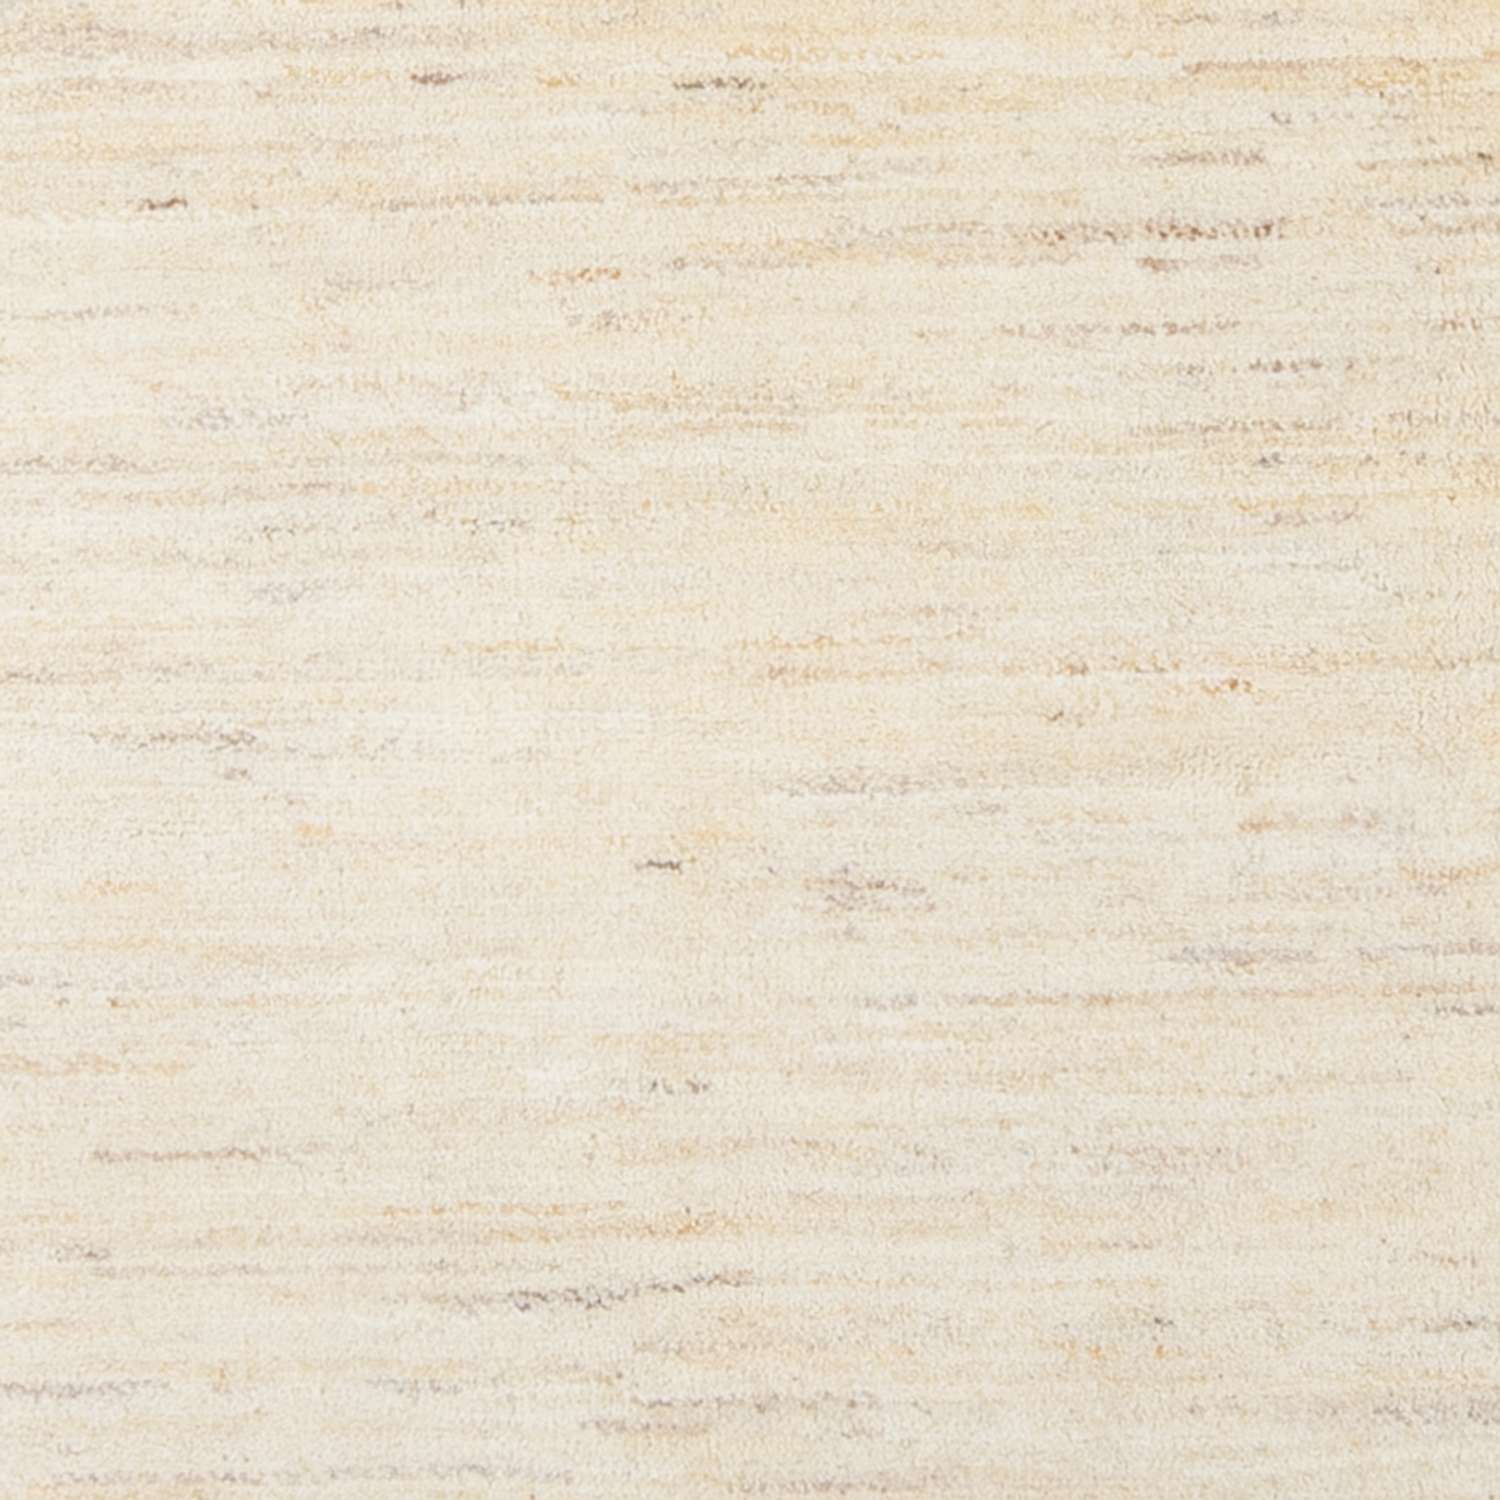 Gabbeh tapijt - Perzisch - 226 x 174 cm - licht beige